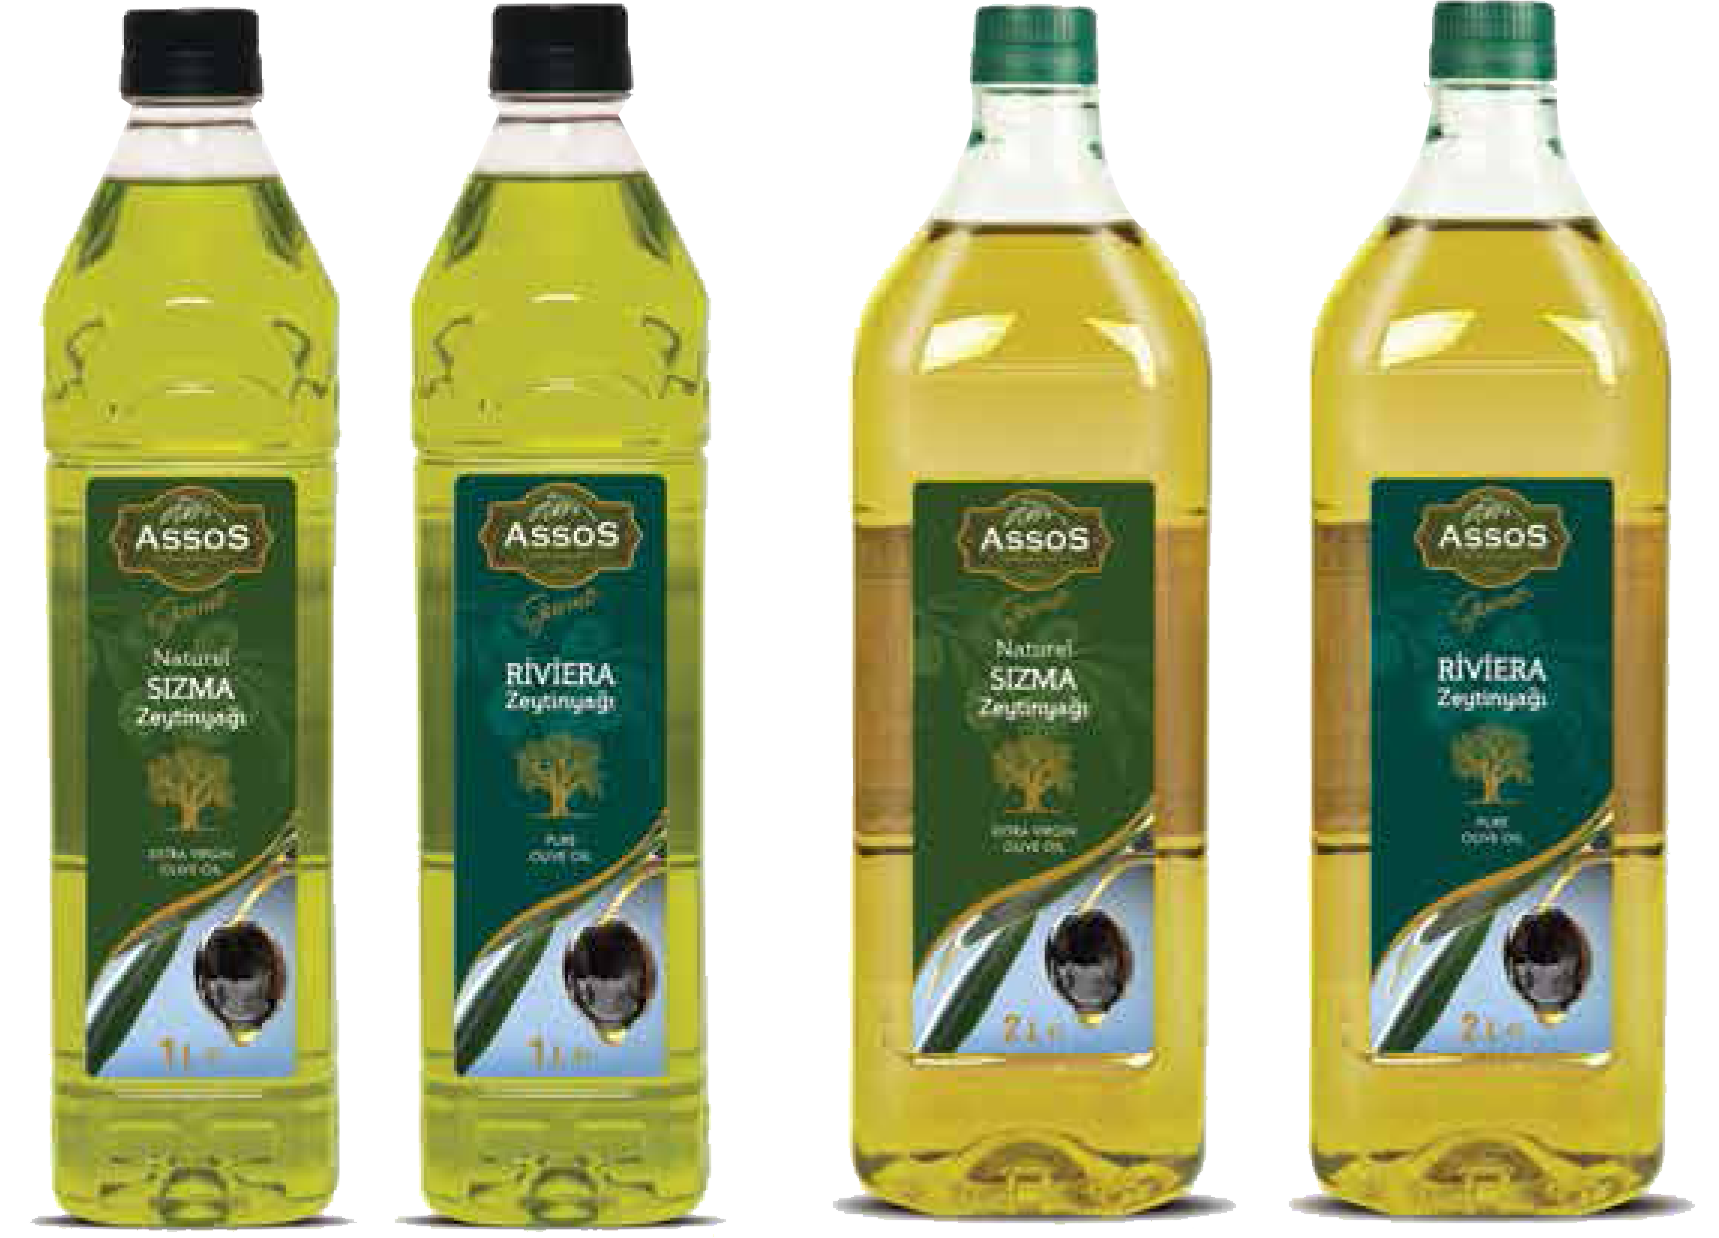 Фирма оливкового масла